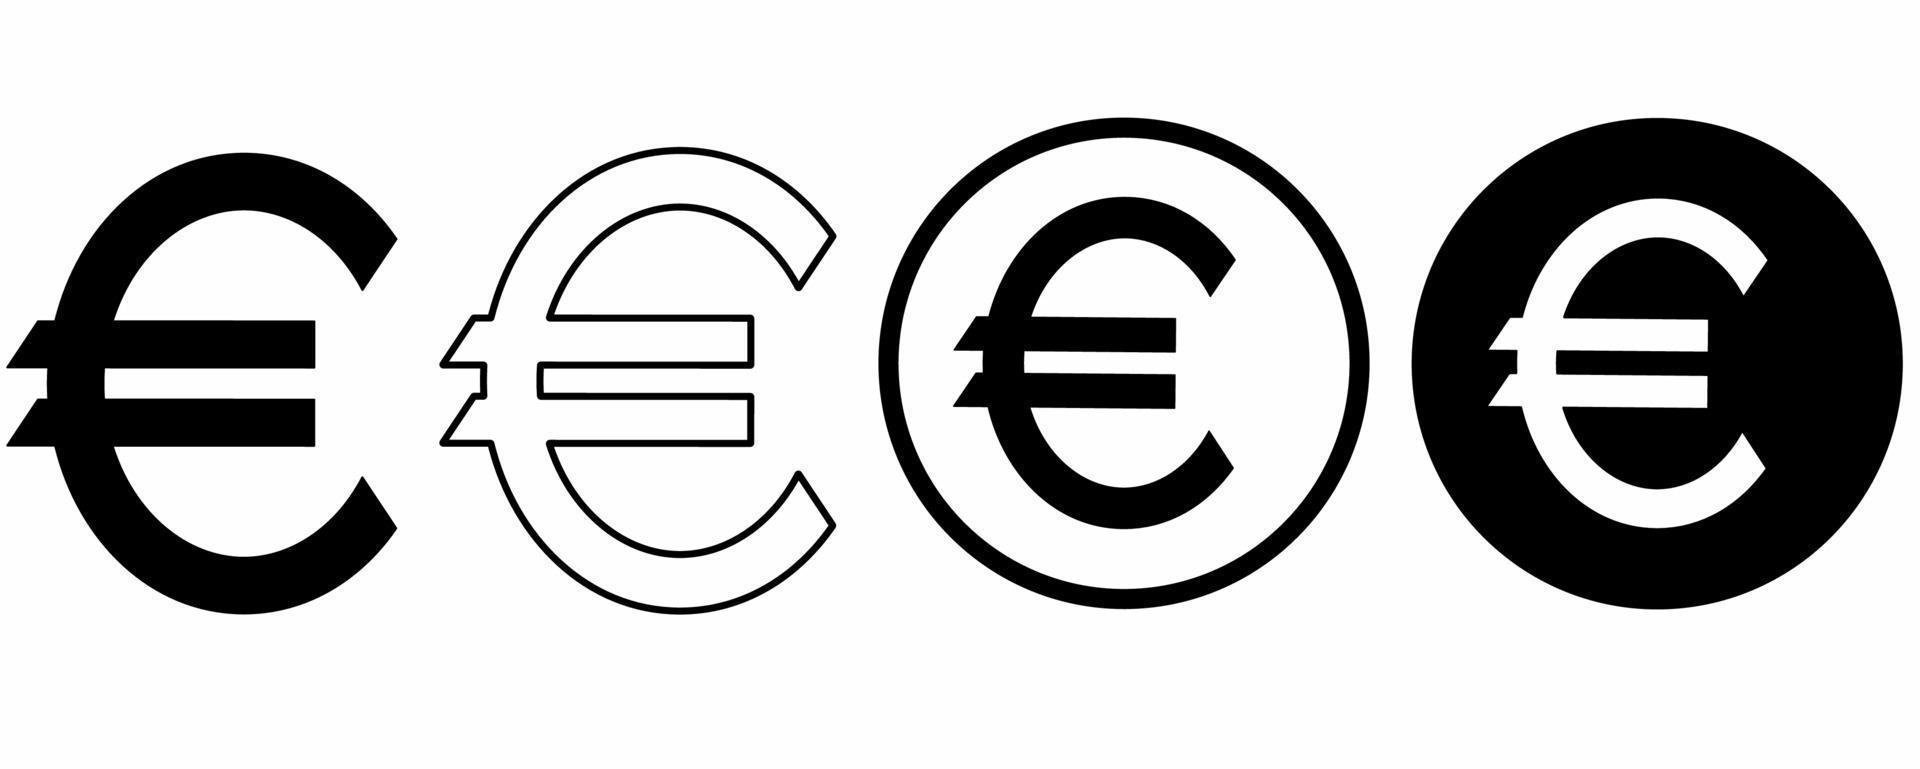 Euro-Zeichen-Icon-Set isoliert auf weißem Hintergrund vektor